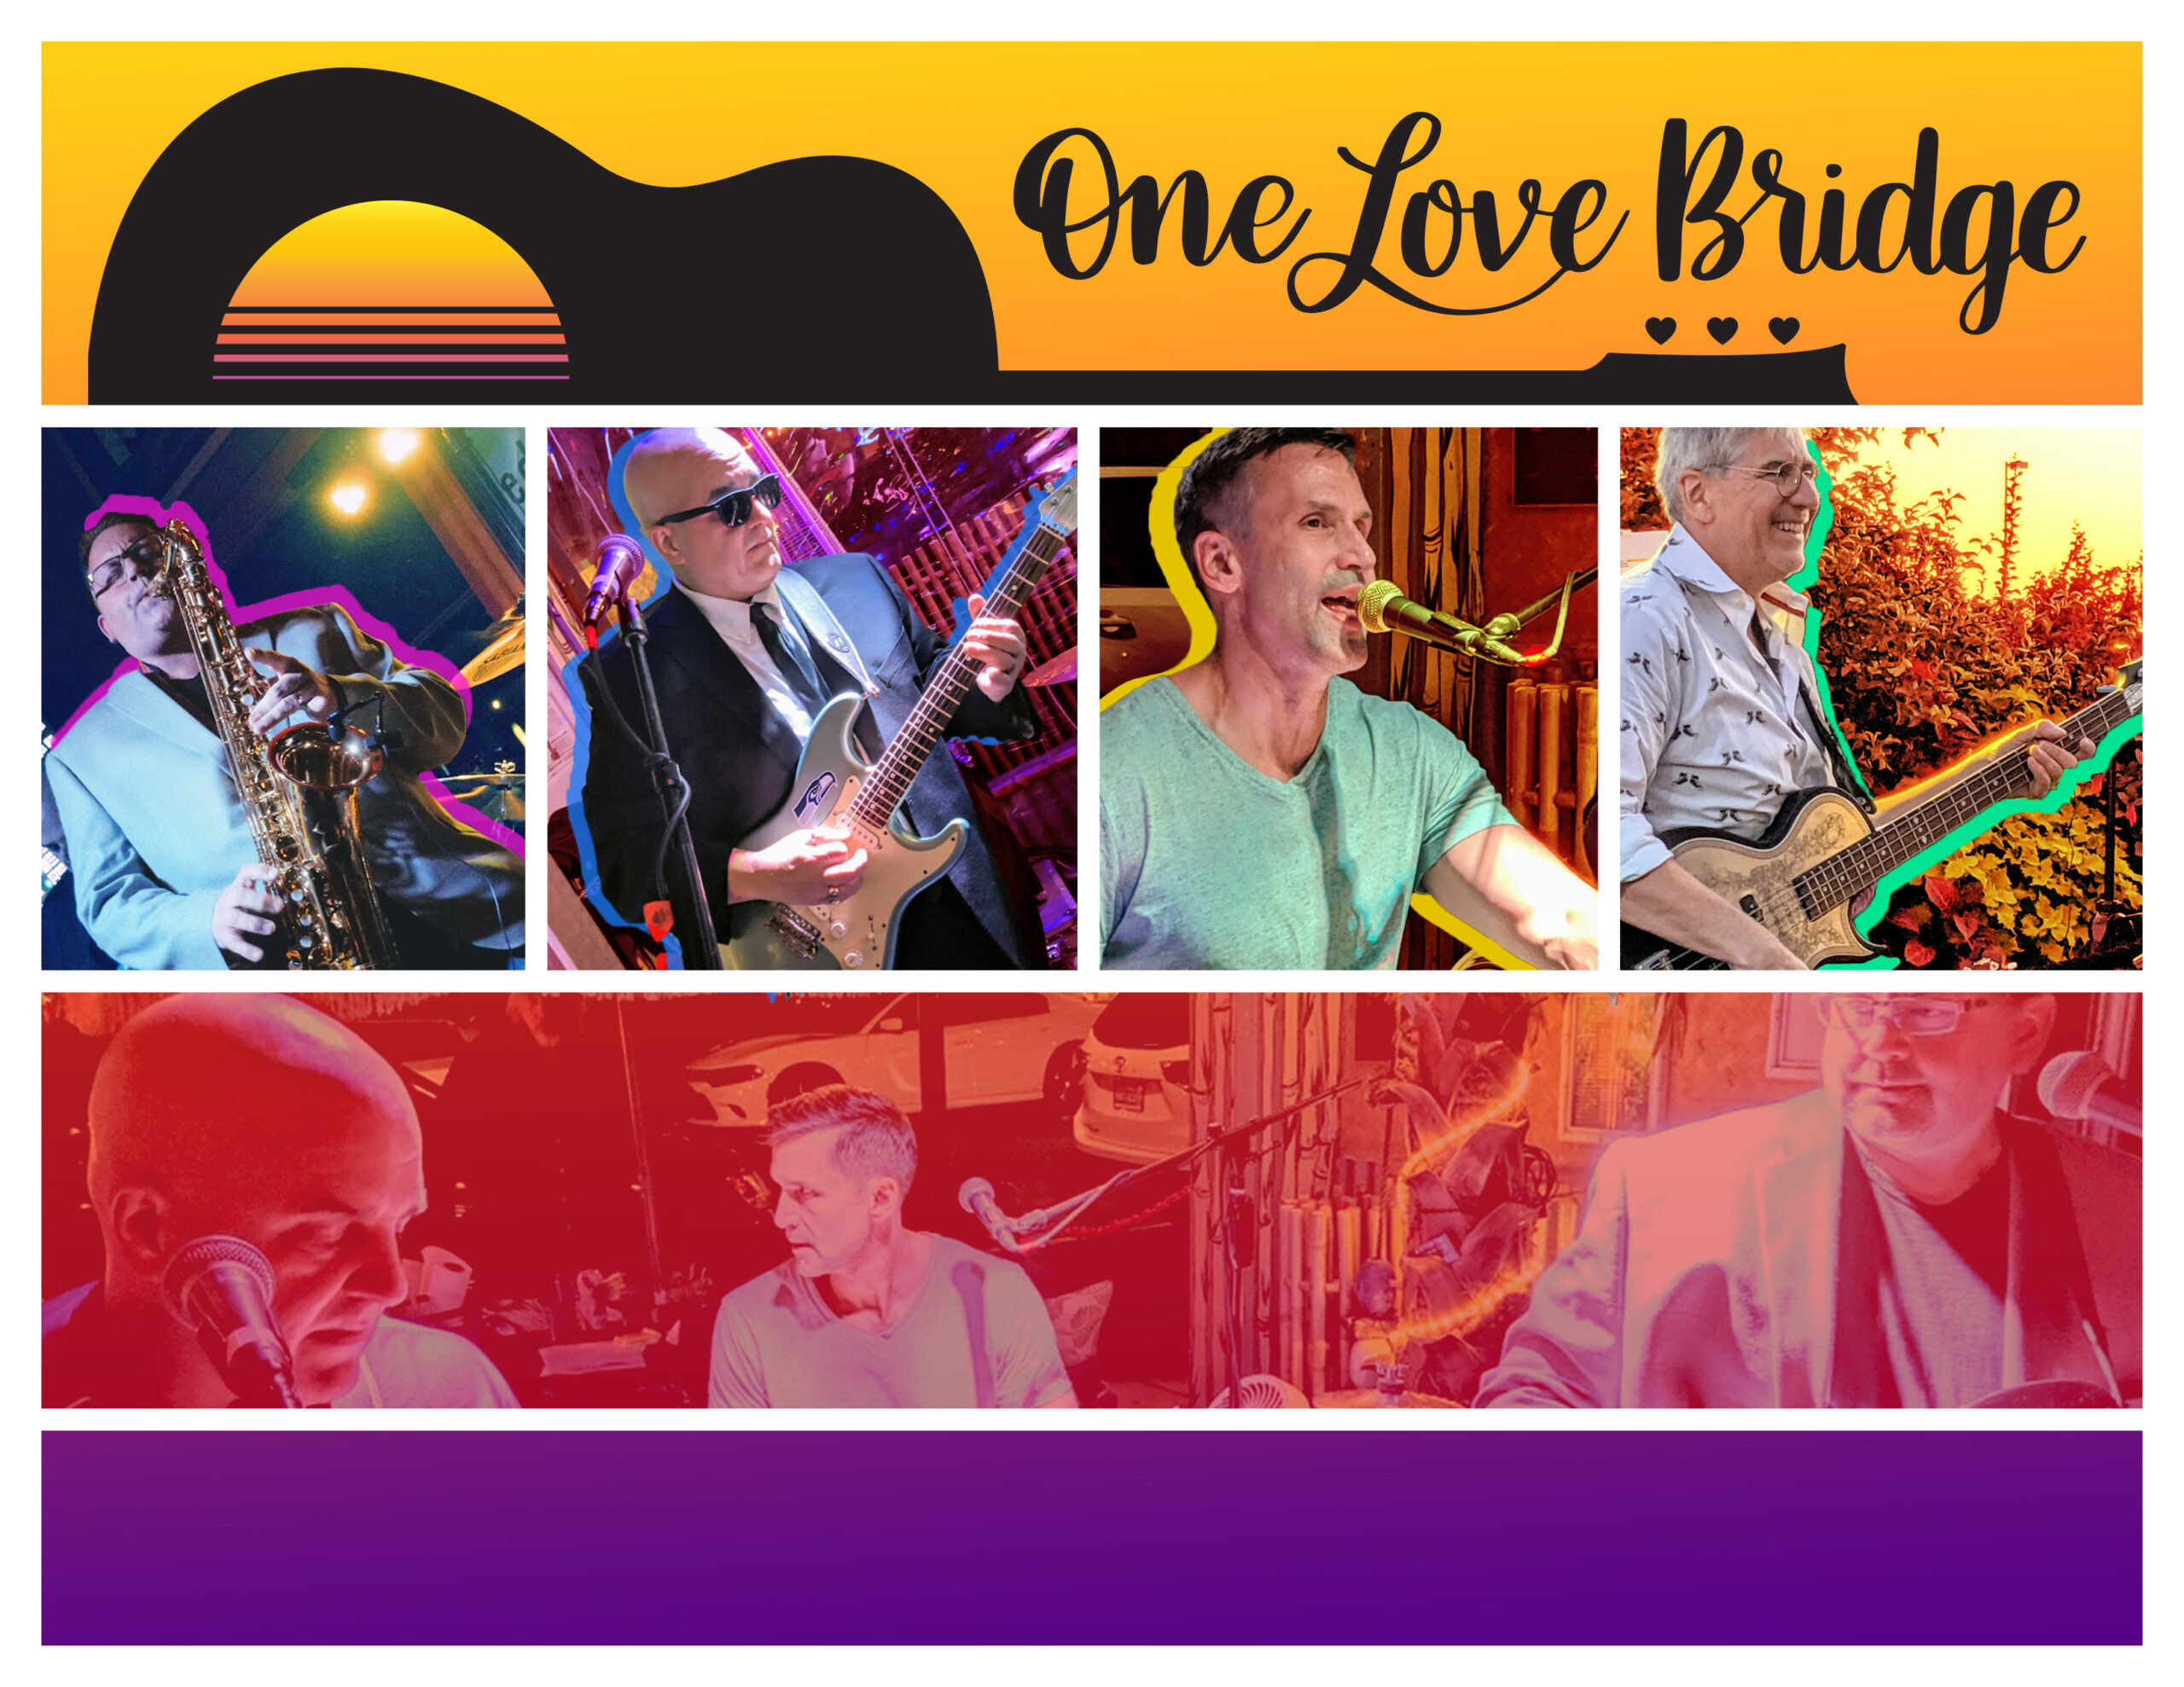 Mill Creek Town Center Summer Concert Series One Love Bridge